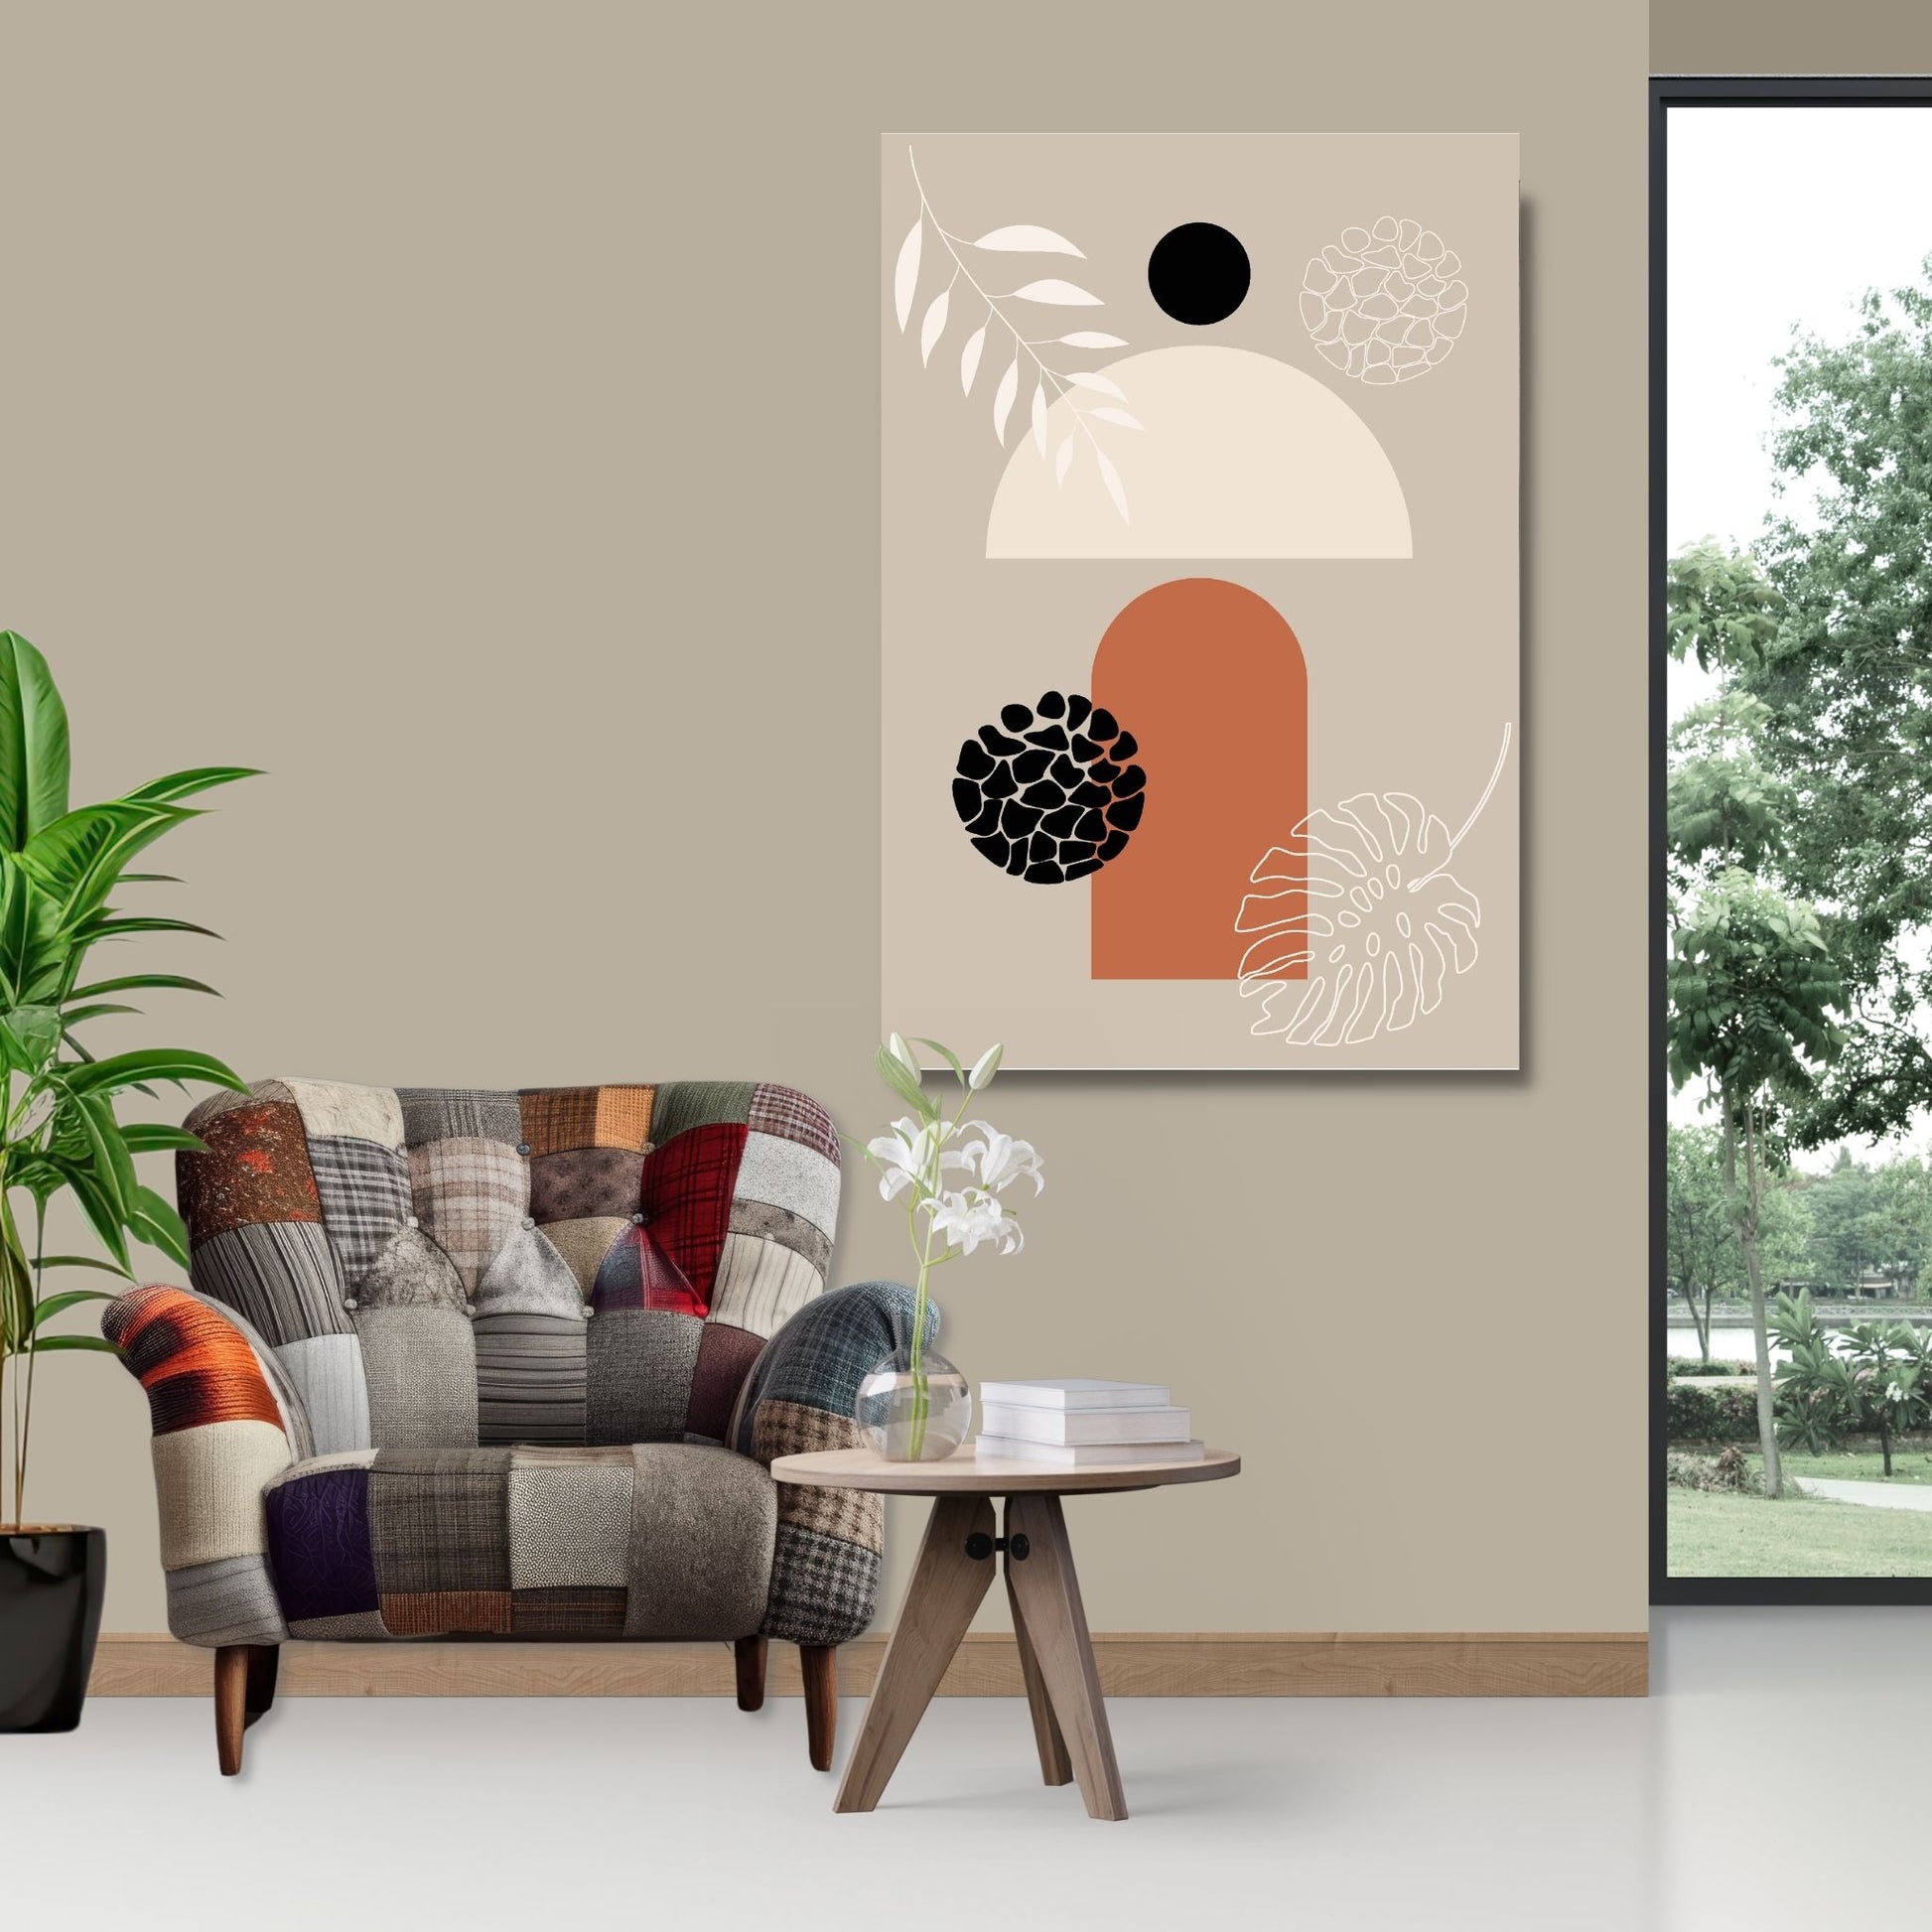 Abstract Shapes No3.3 i sort, beige, rust og hvite fargenyanser. Plakat har en hvit kant om gir dybde og fremhever motivet. Illustrasjon som viser motiv på lerret.